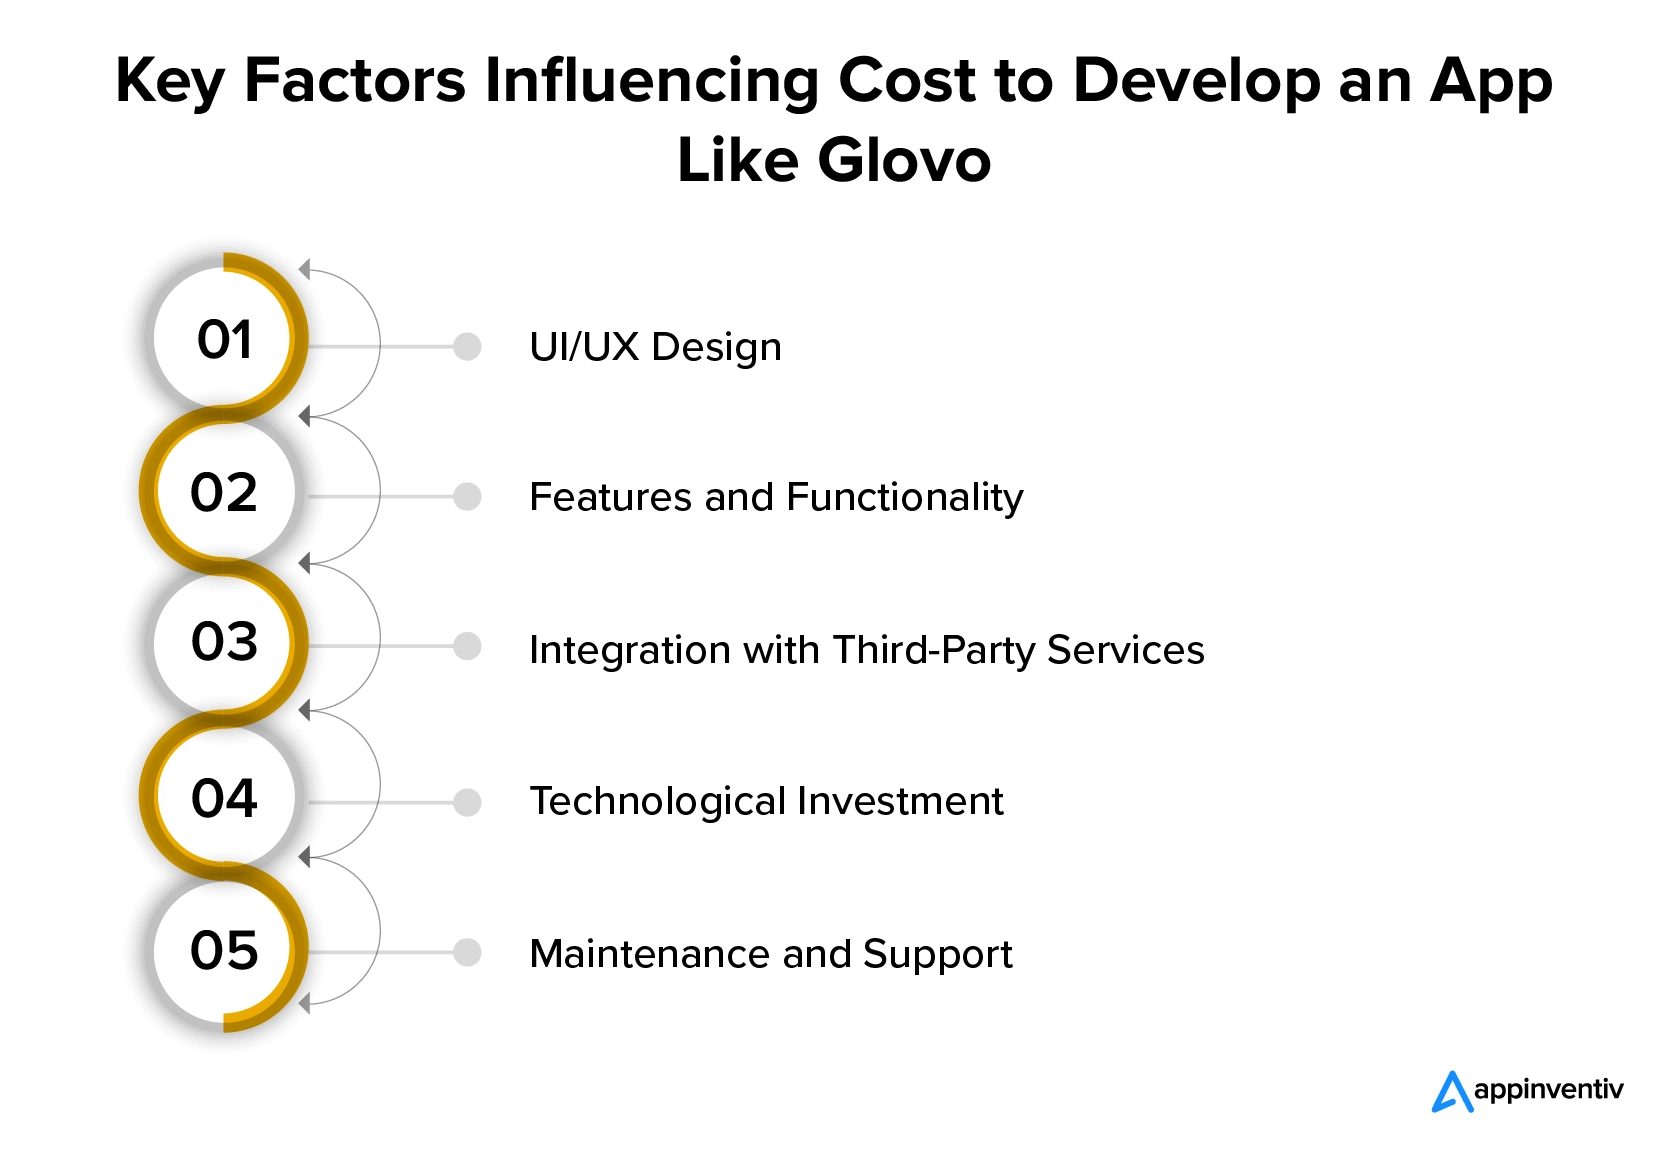 Faktor yang mempengaruhi biaya untuk mengembangkan aplikasi bergaya Glovo